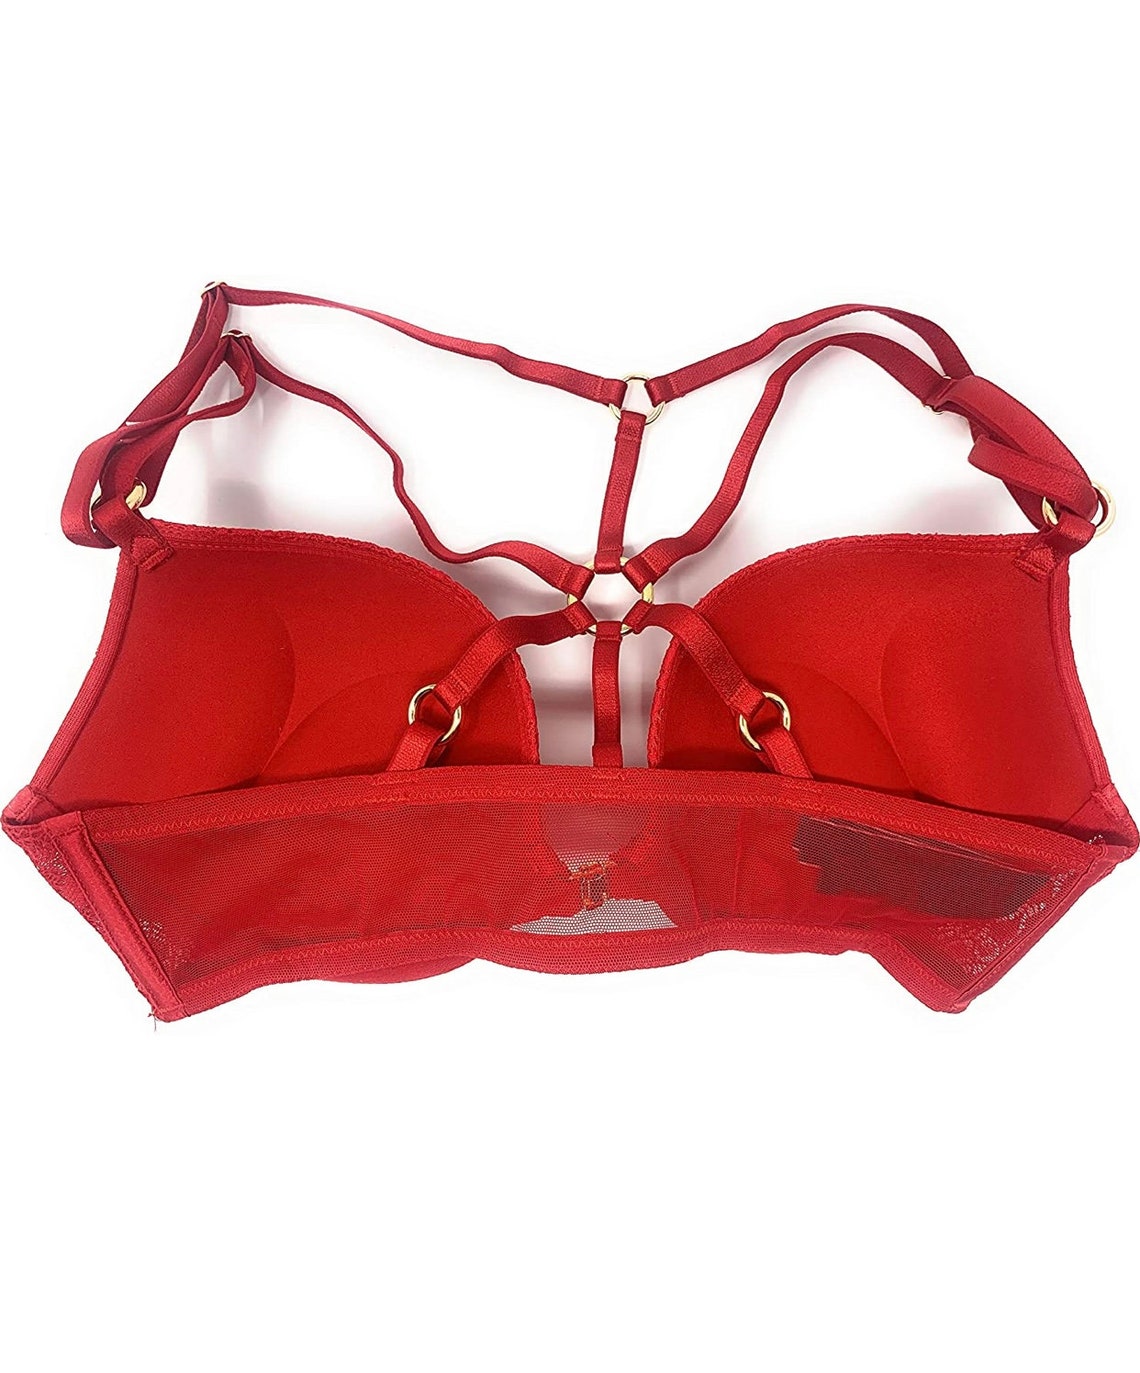 Victoria Secret bra double push-up size 36 C | Etsy